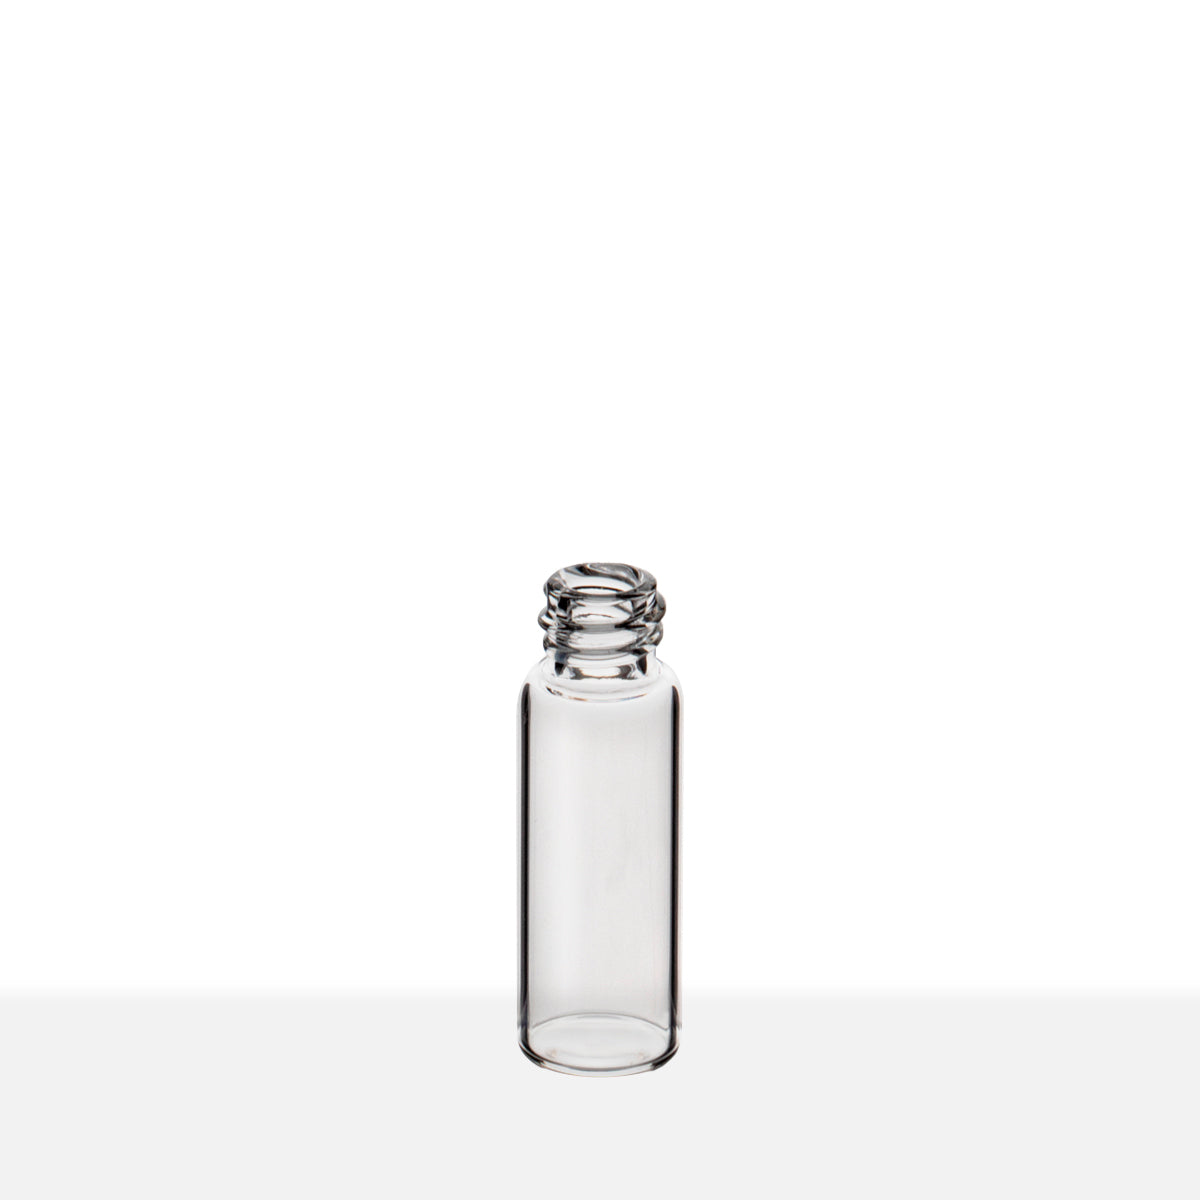 SCREW THREAD GLASS VIALS - CLEAR Item #:VC81235